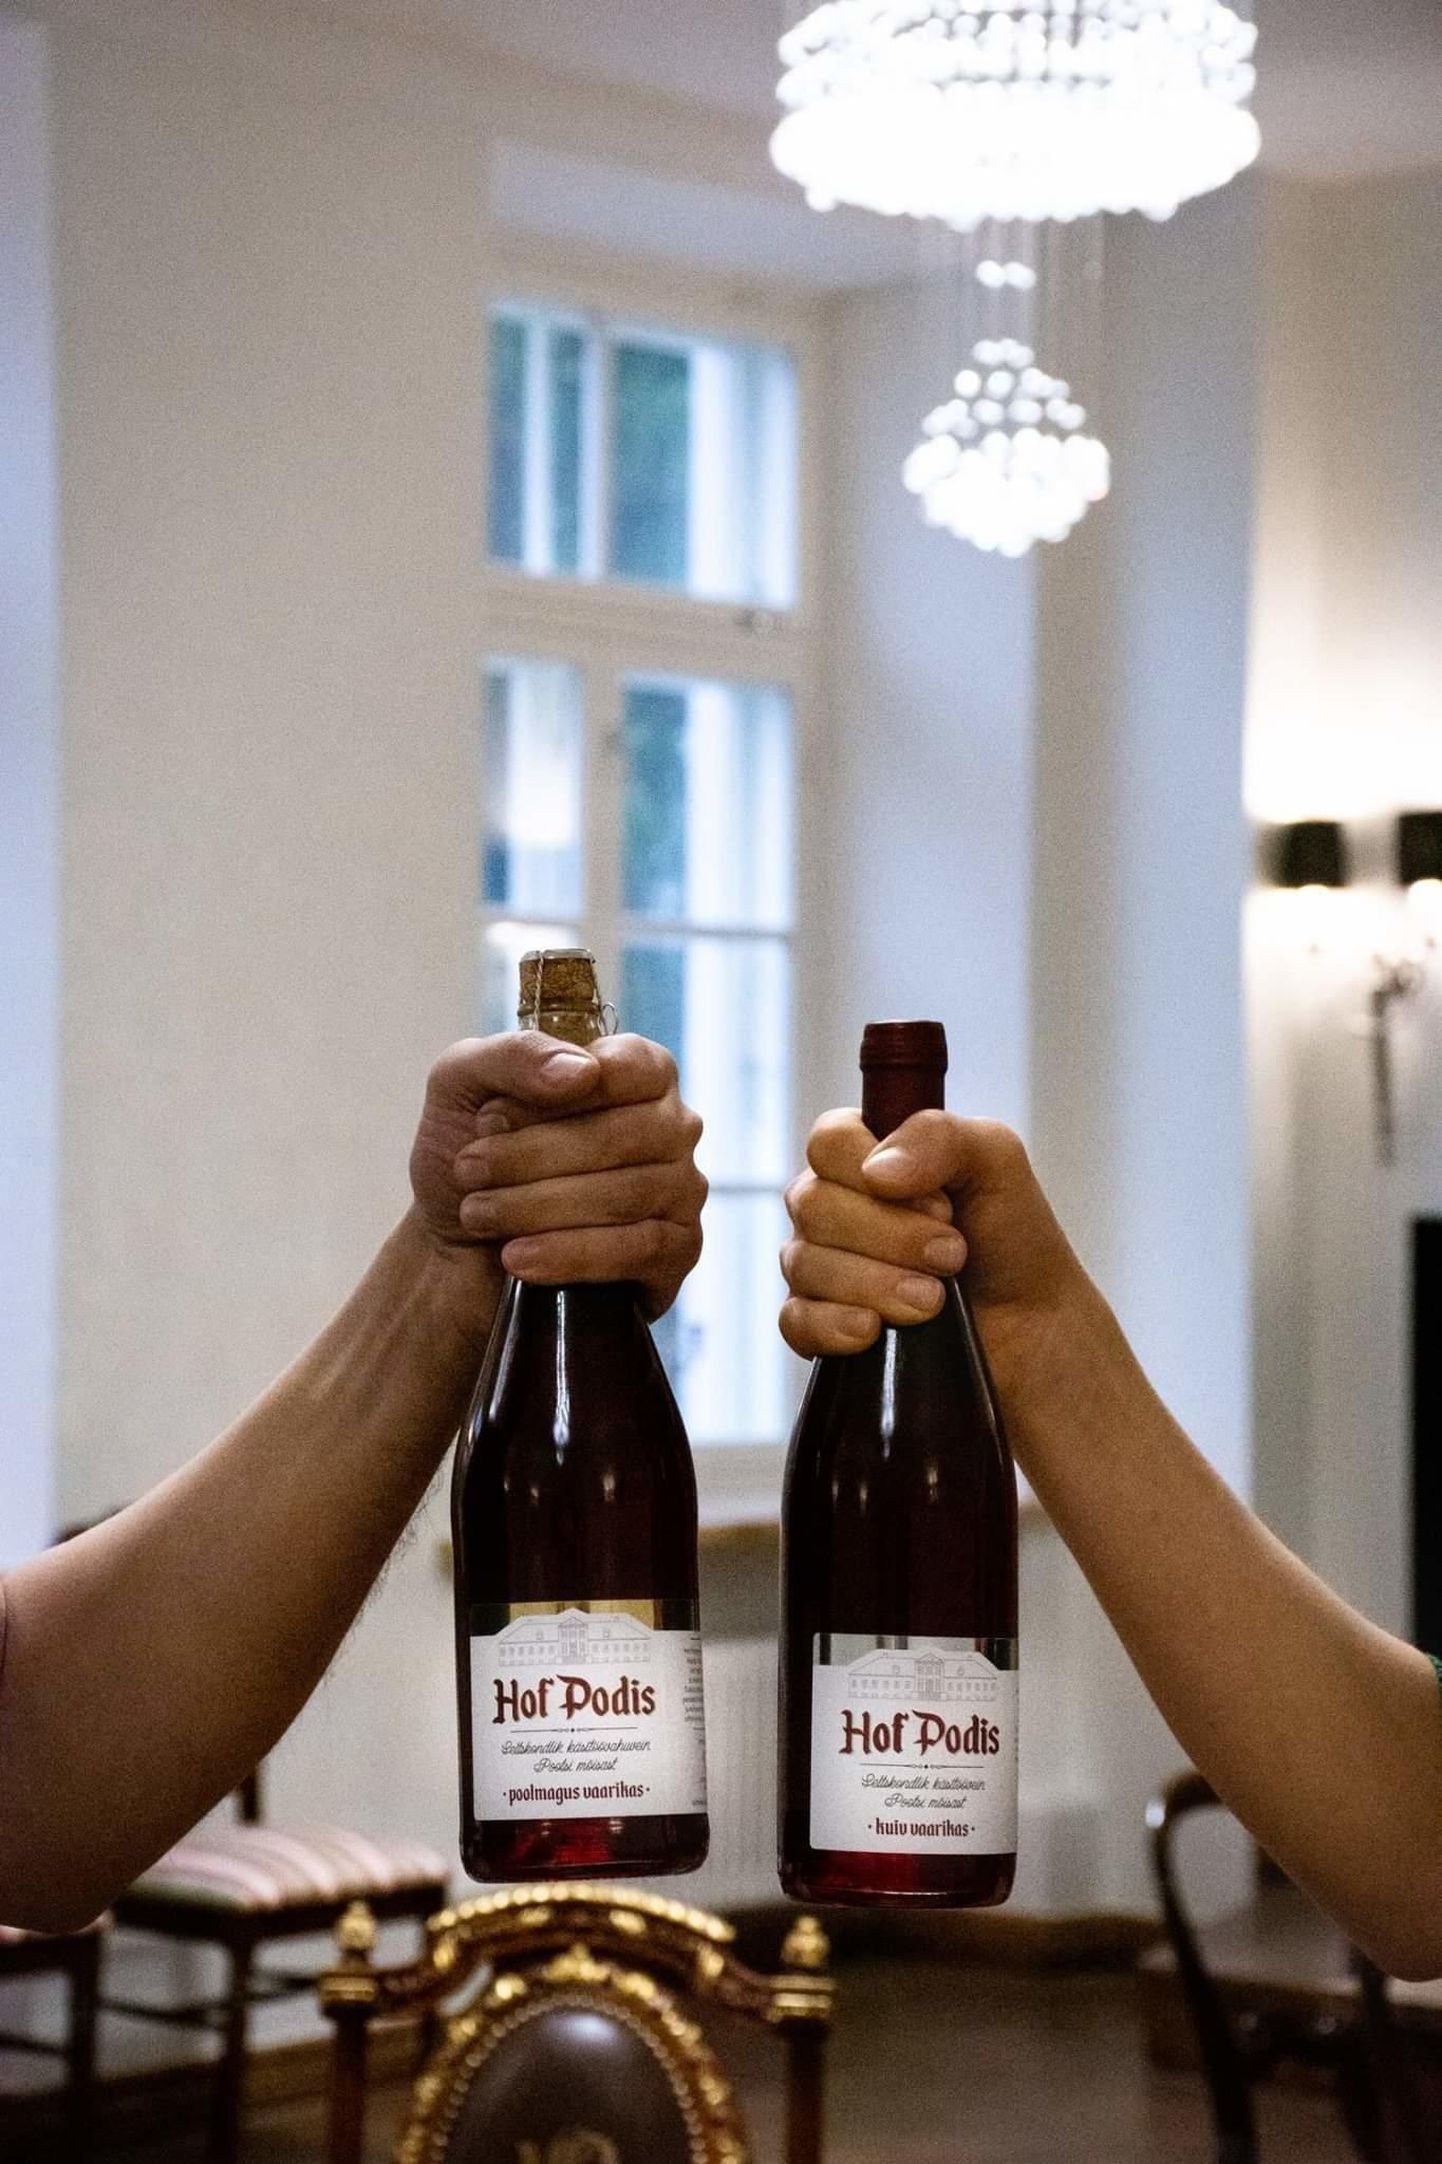 Pootsi veinimõis osaleb konkursil tarbijate armastatud Hof Podise vaarikavahuveini ja kuiva vaarikaveiniga.